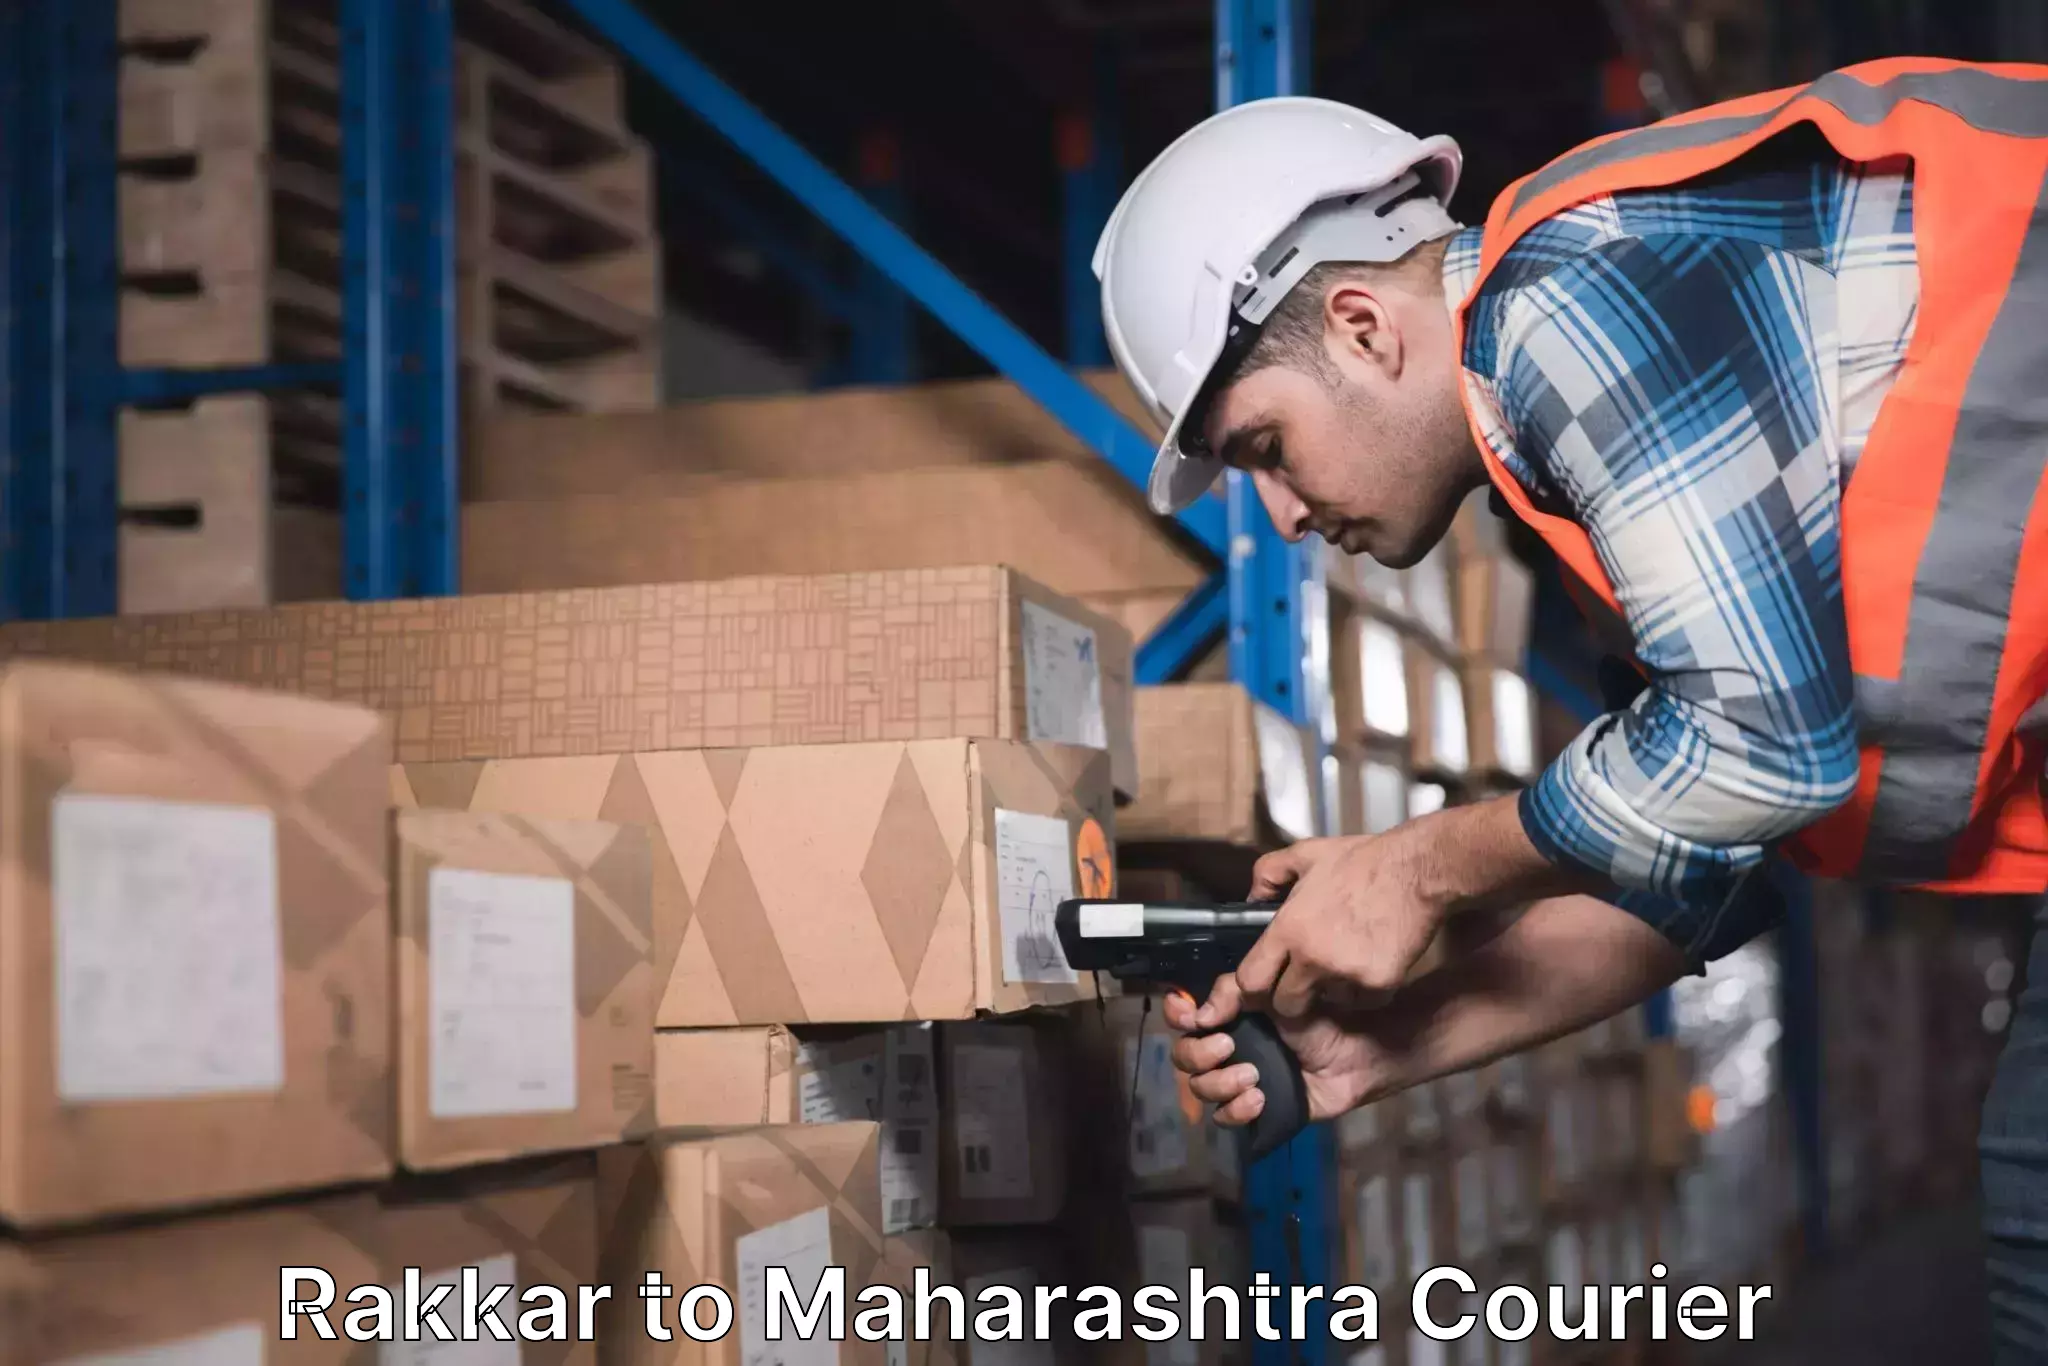 24/7 courier service Rakkar to Mumbai Port